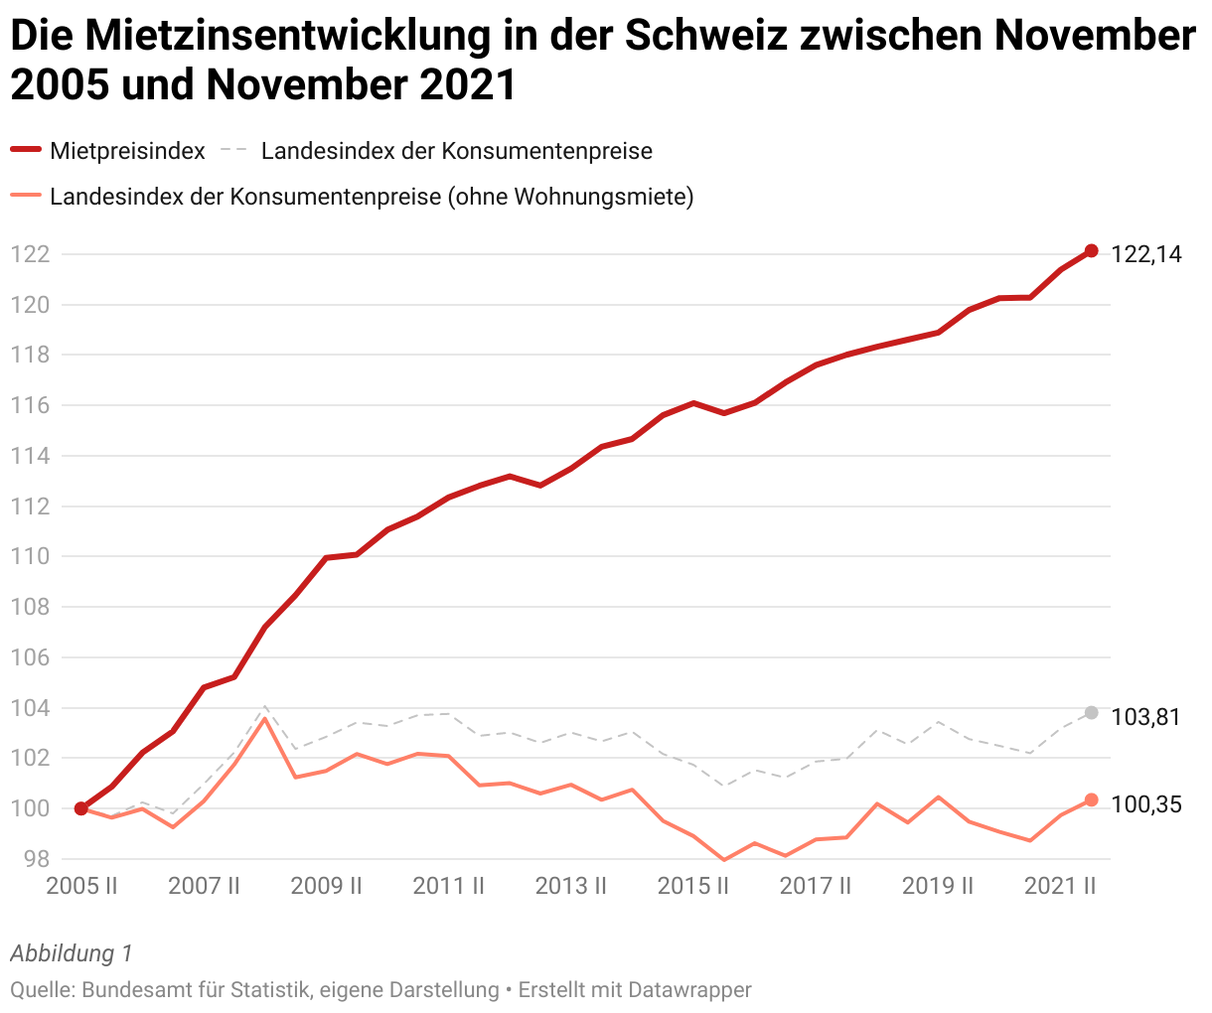 die-mietzinsentwicklung-in-der-schweiz-zwischen-november-2005-und-november-2021